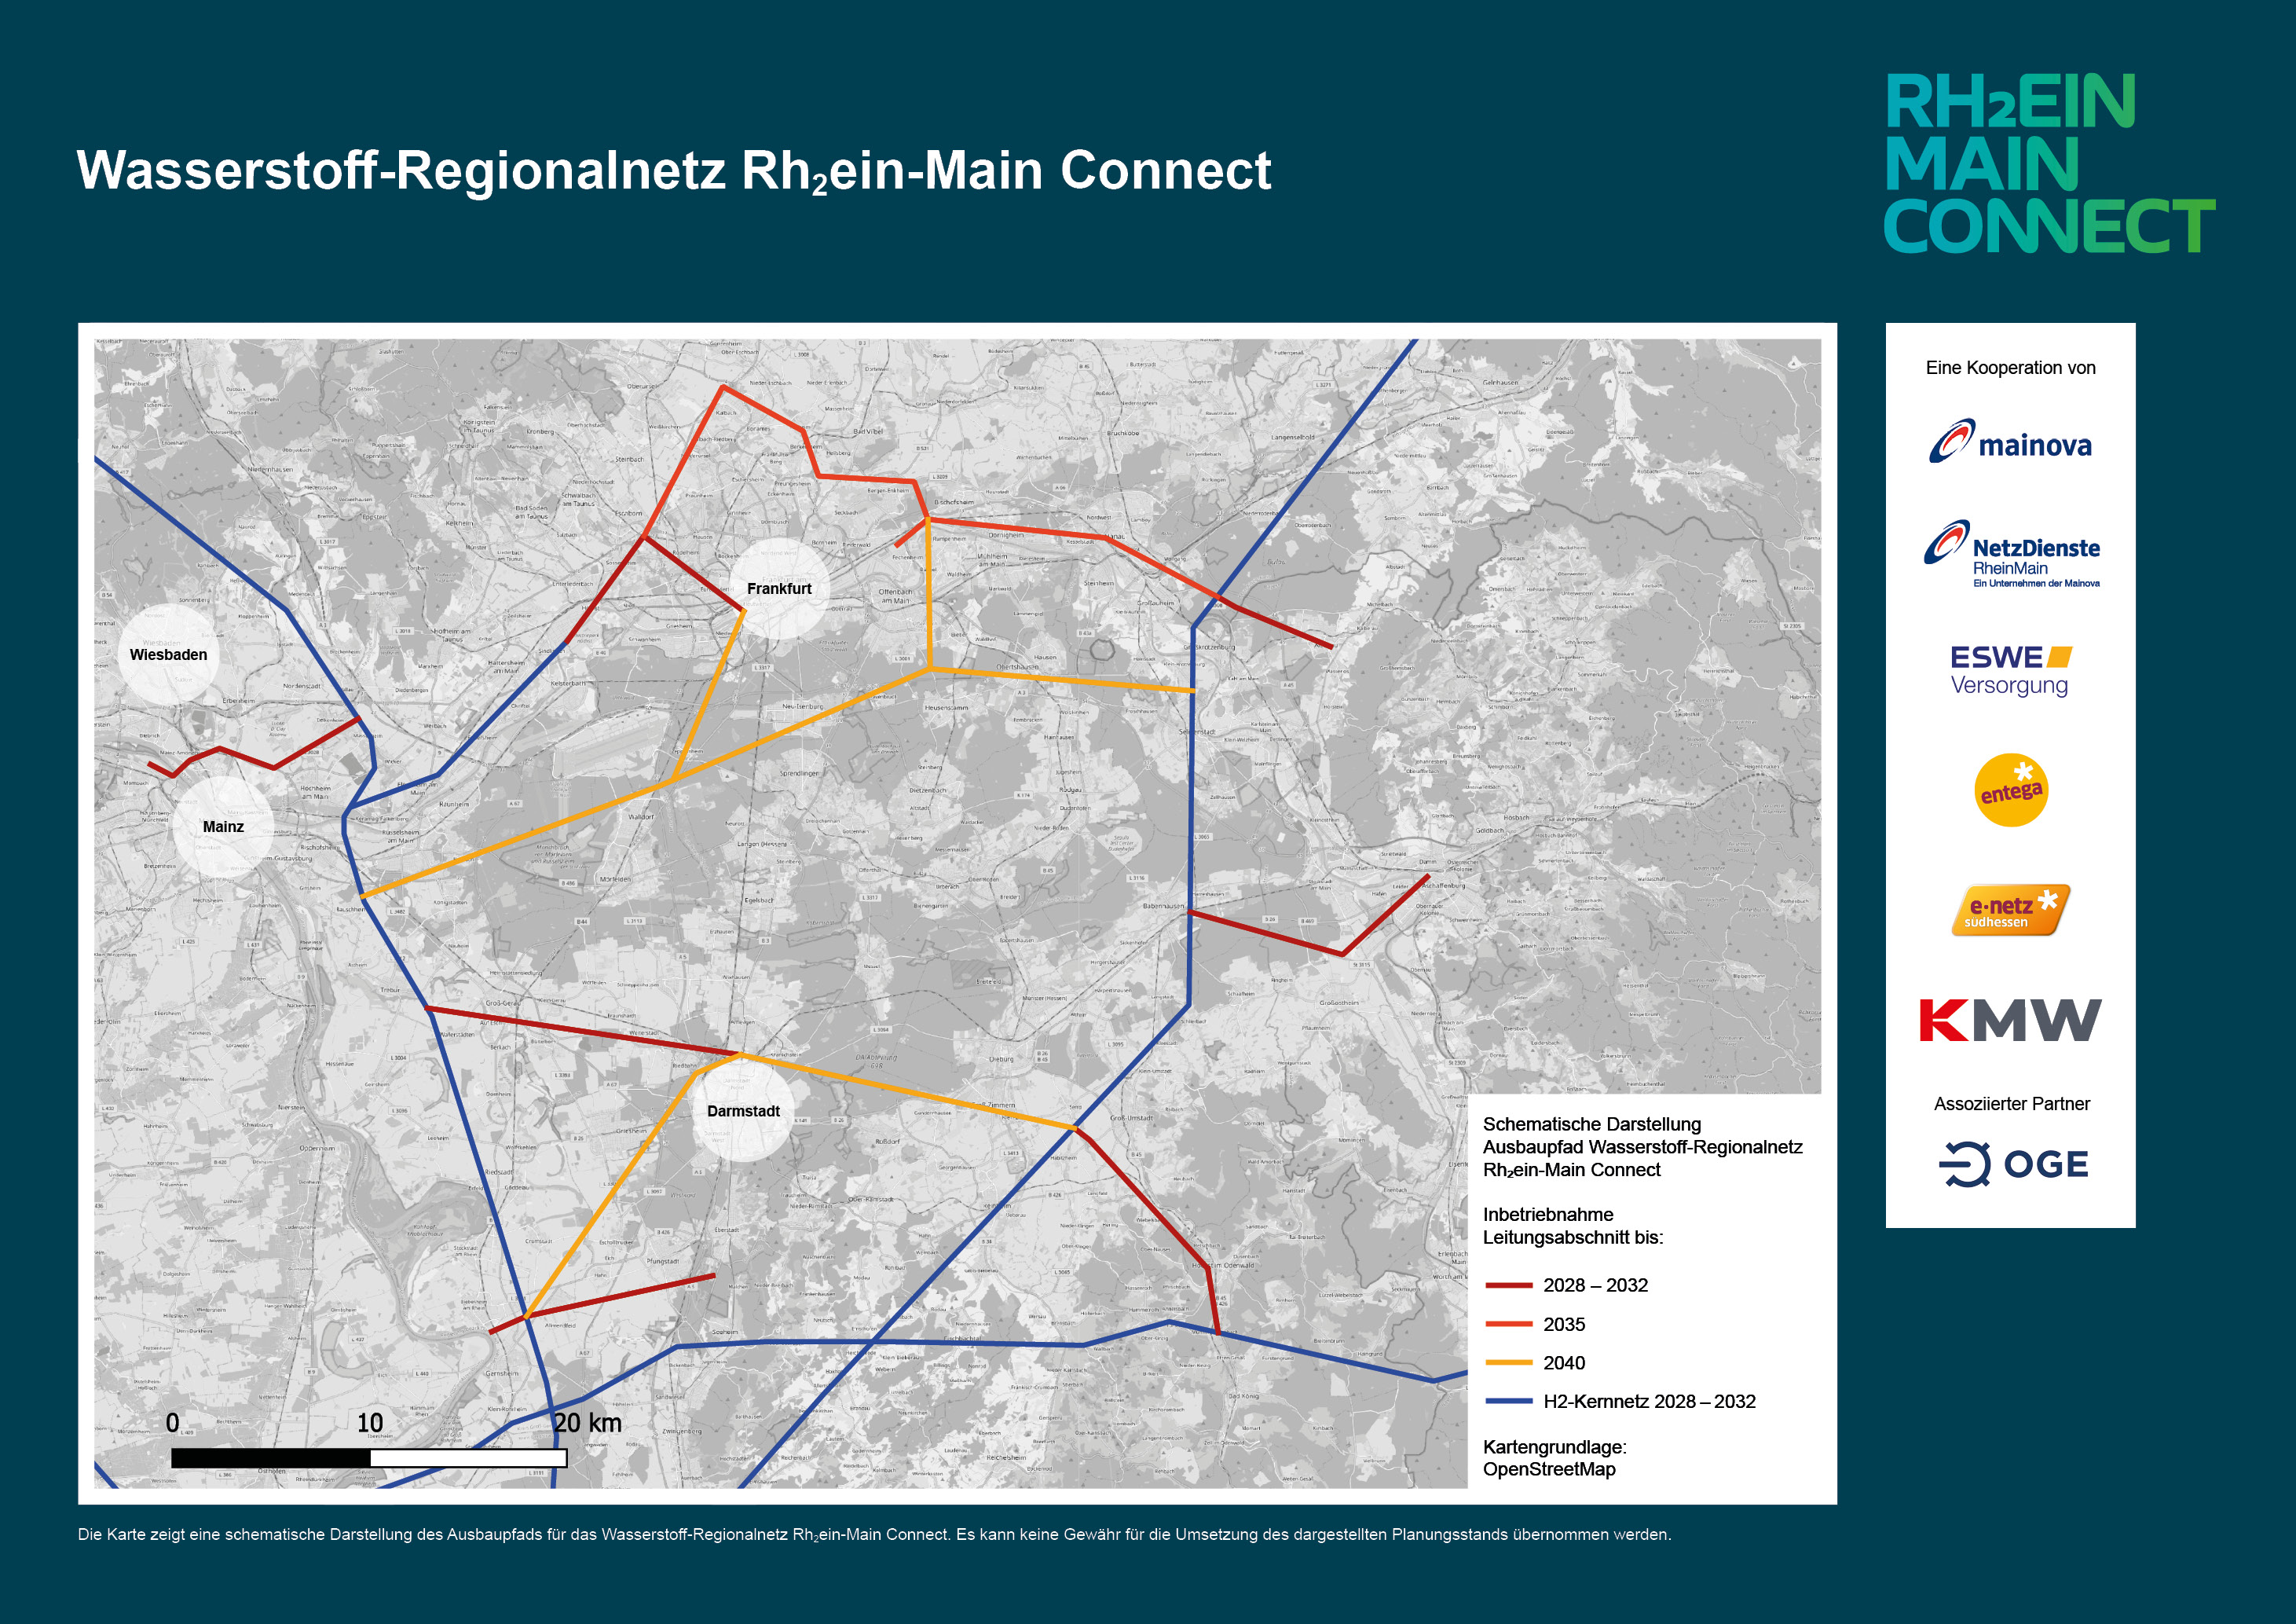 Wasserstoff-Regionalnetz Rh2ein-Main Connect